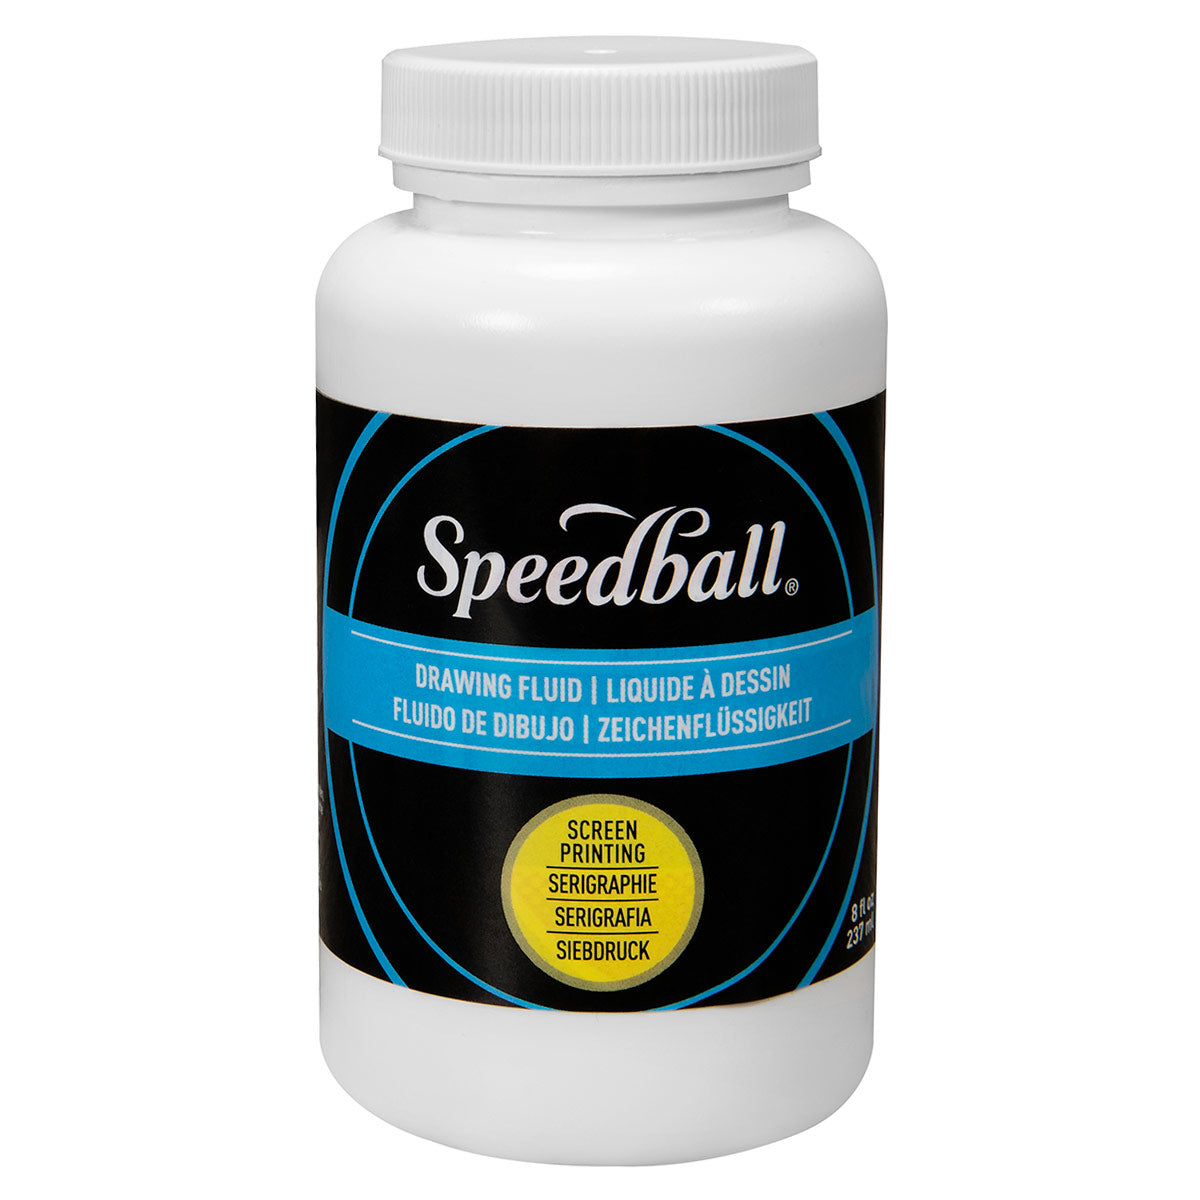 Speedball-Fluide de dessin pour écran-236ml (8oz)